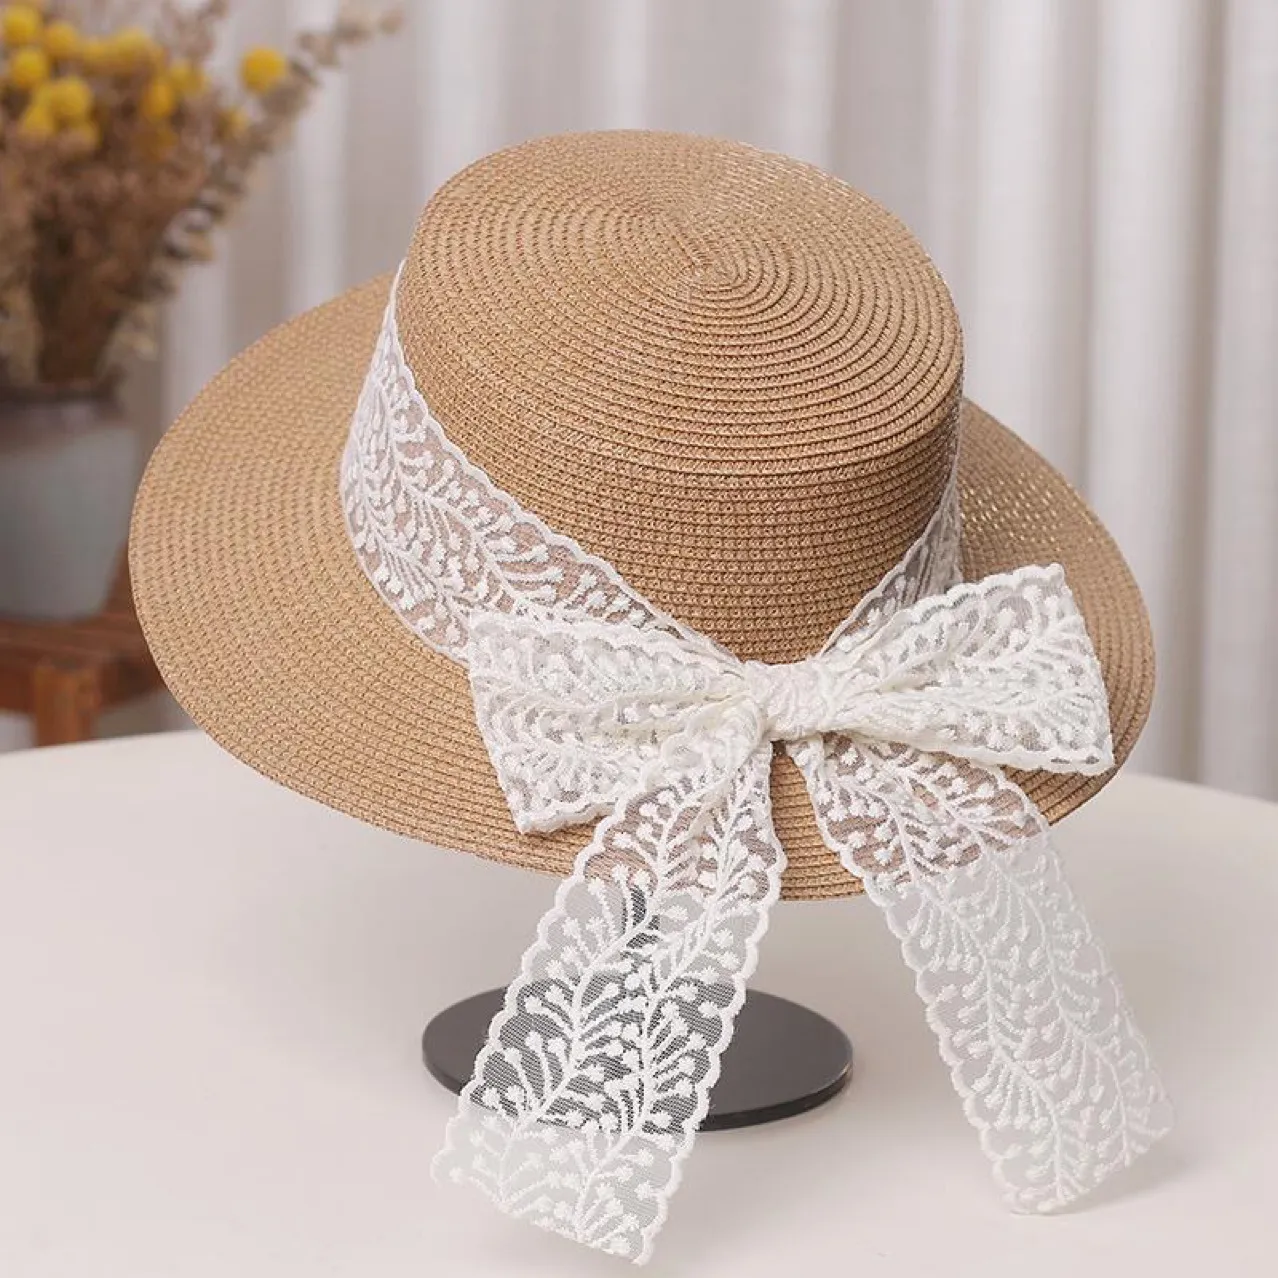 Sombrero de encaje con lazo de mariposa para el sol para mamá y para mí, elegante y artístico para salidas y viajes Caqui big image 1